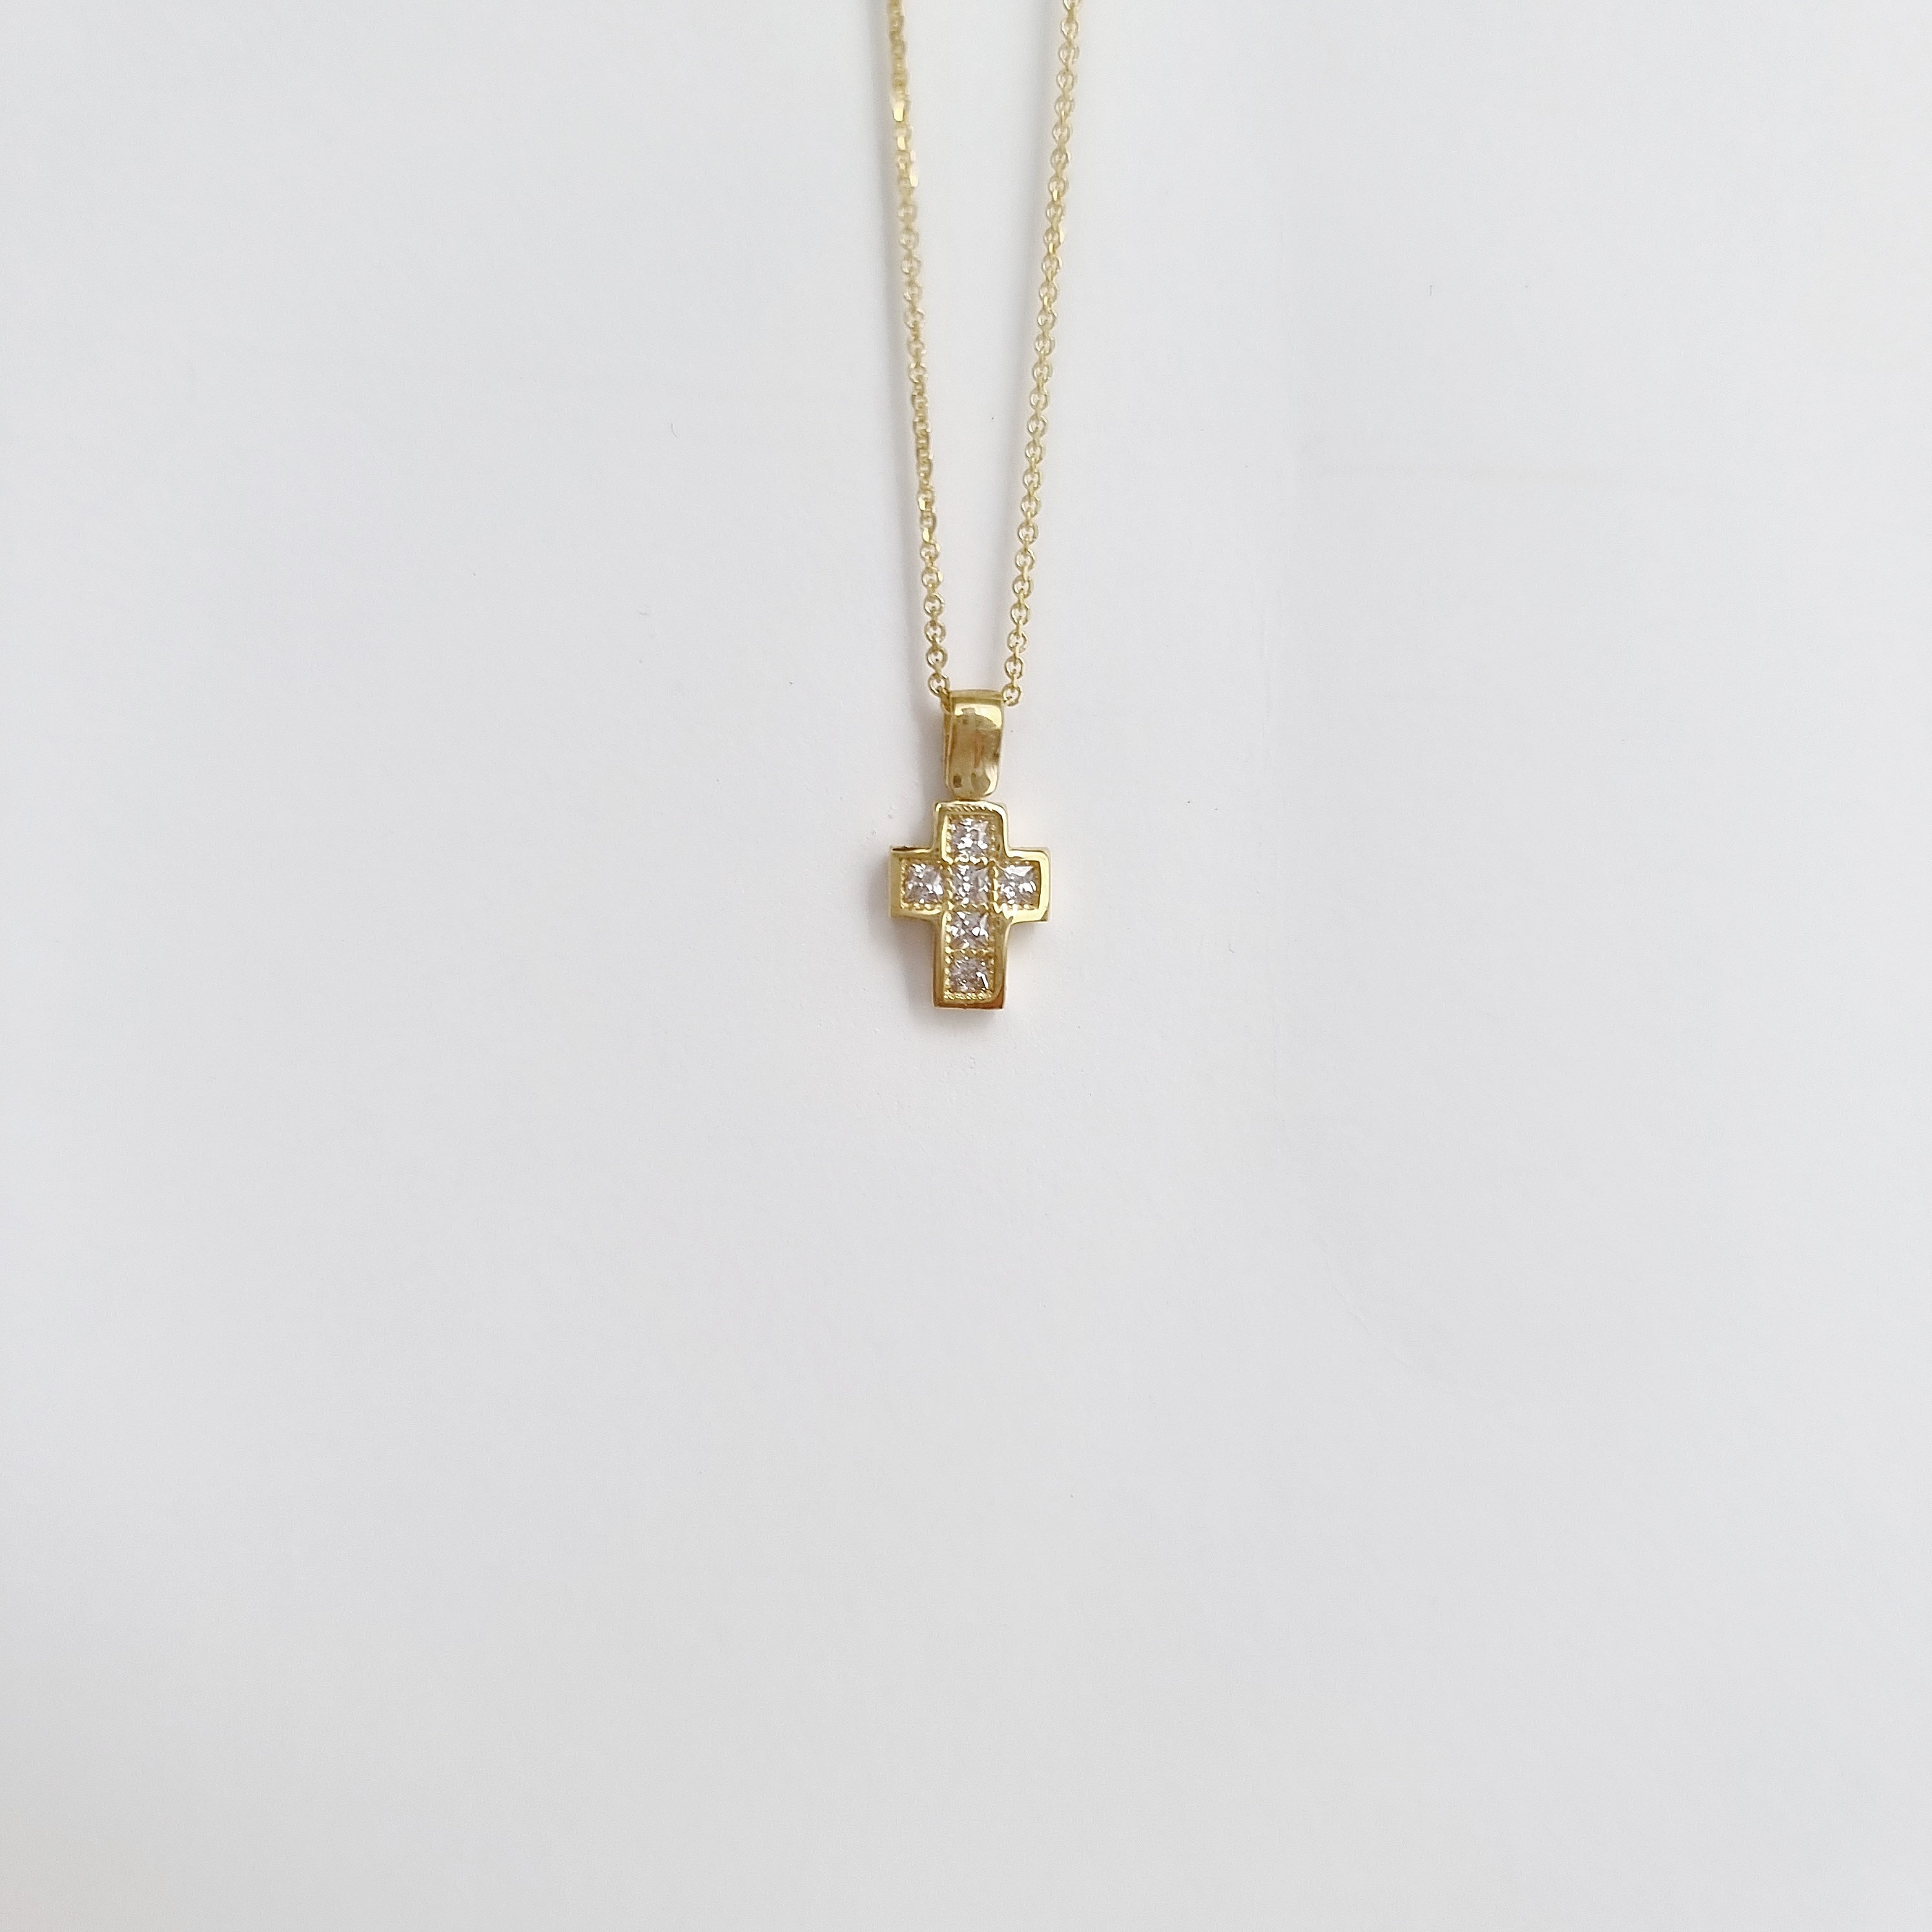 9K Kleine Kreuz Halskette. 9K Gelb Gold Kette Halskette. Cubic Zirkonia  Kreuz. Classy Frauen Kreuz Casual Charm Halskette. -  Österreich